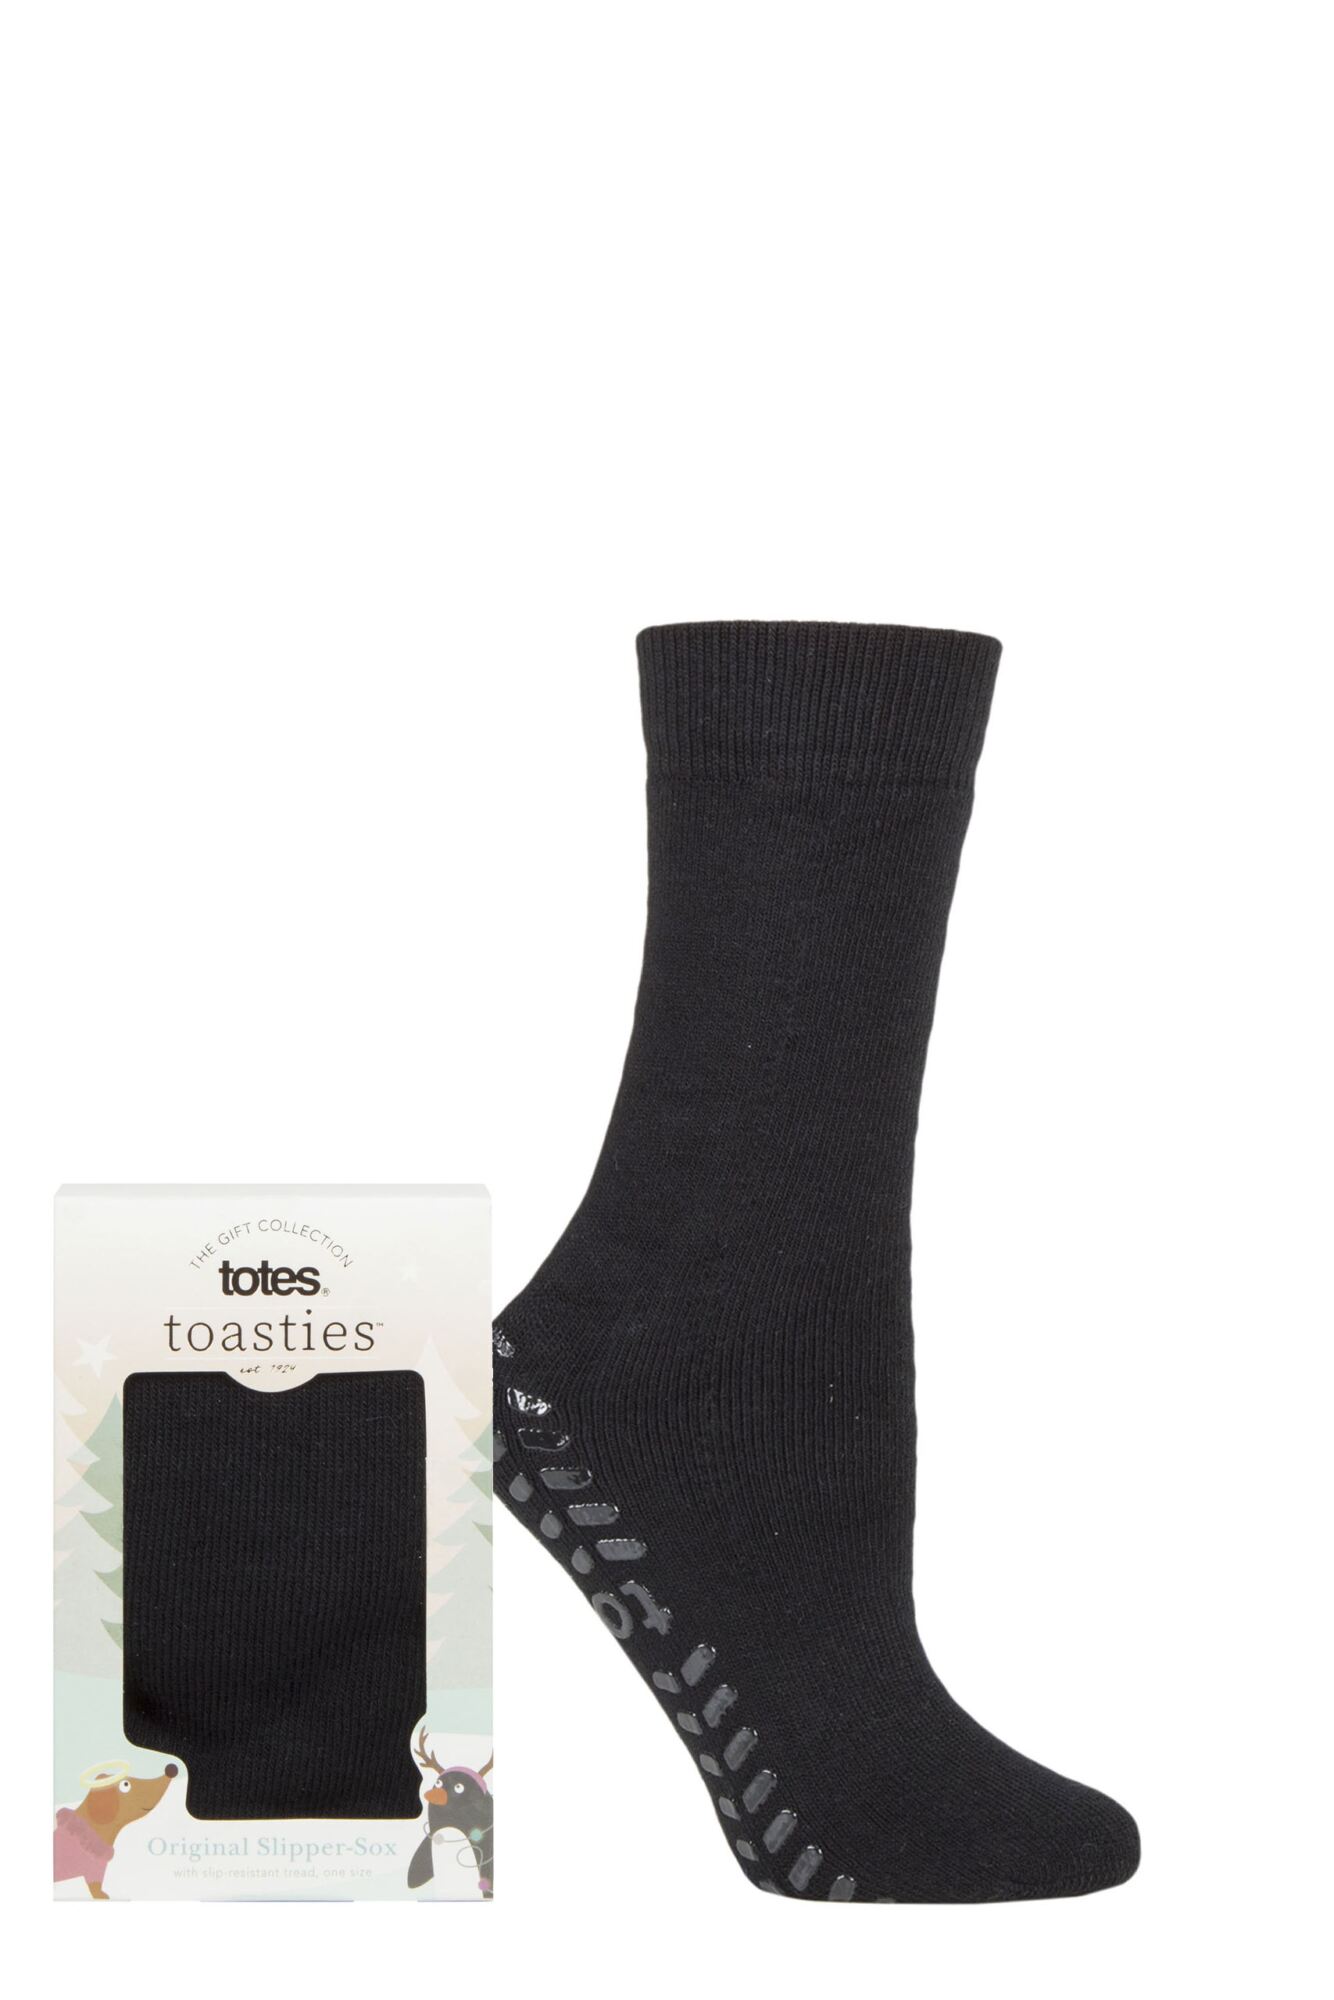 1 Pair Originals Slipper Socks Ladies - Totes